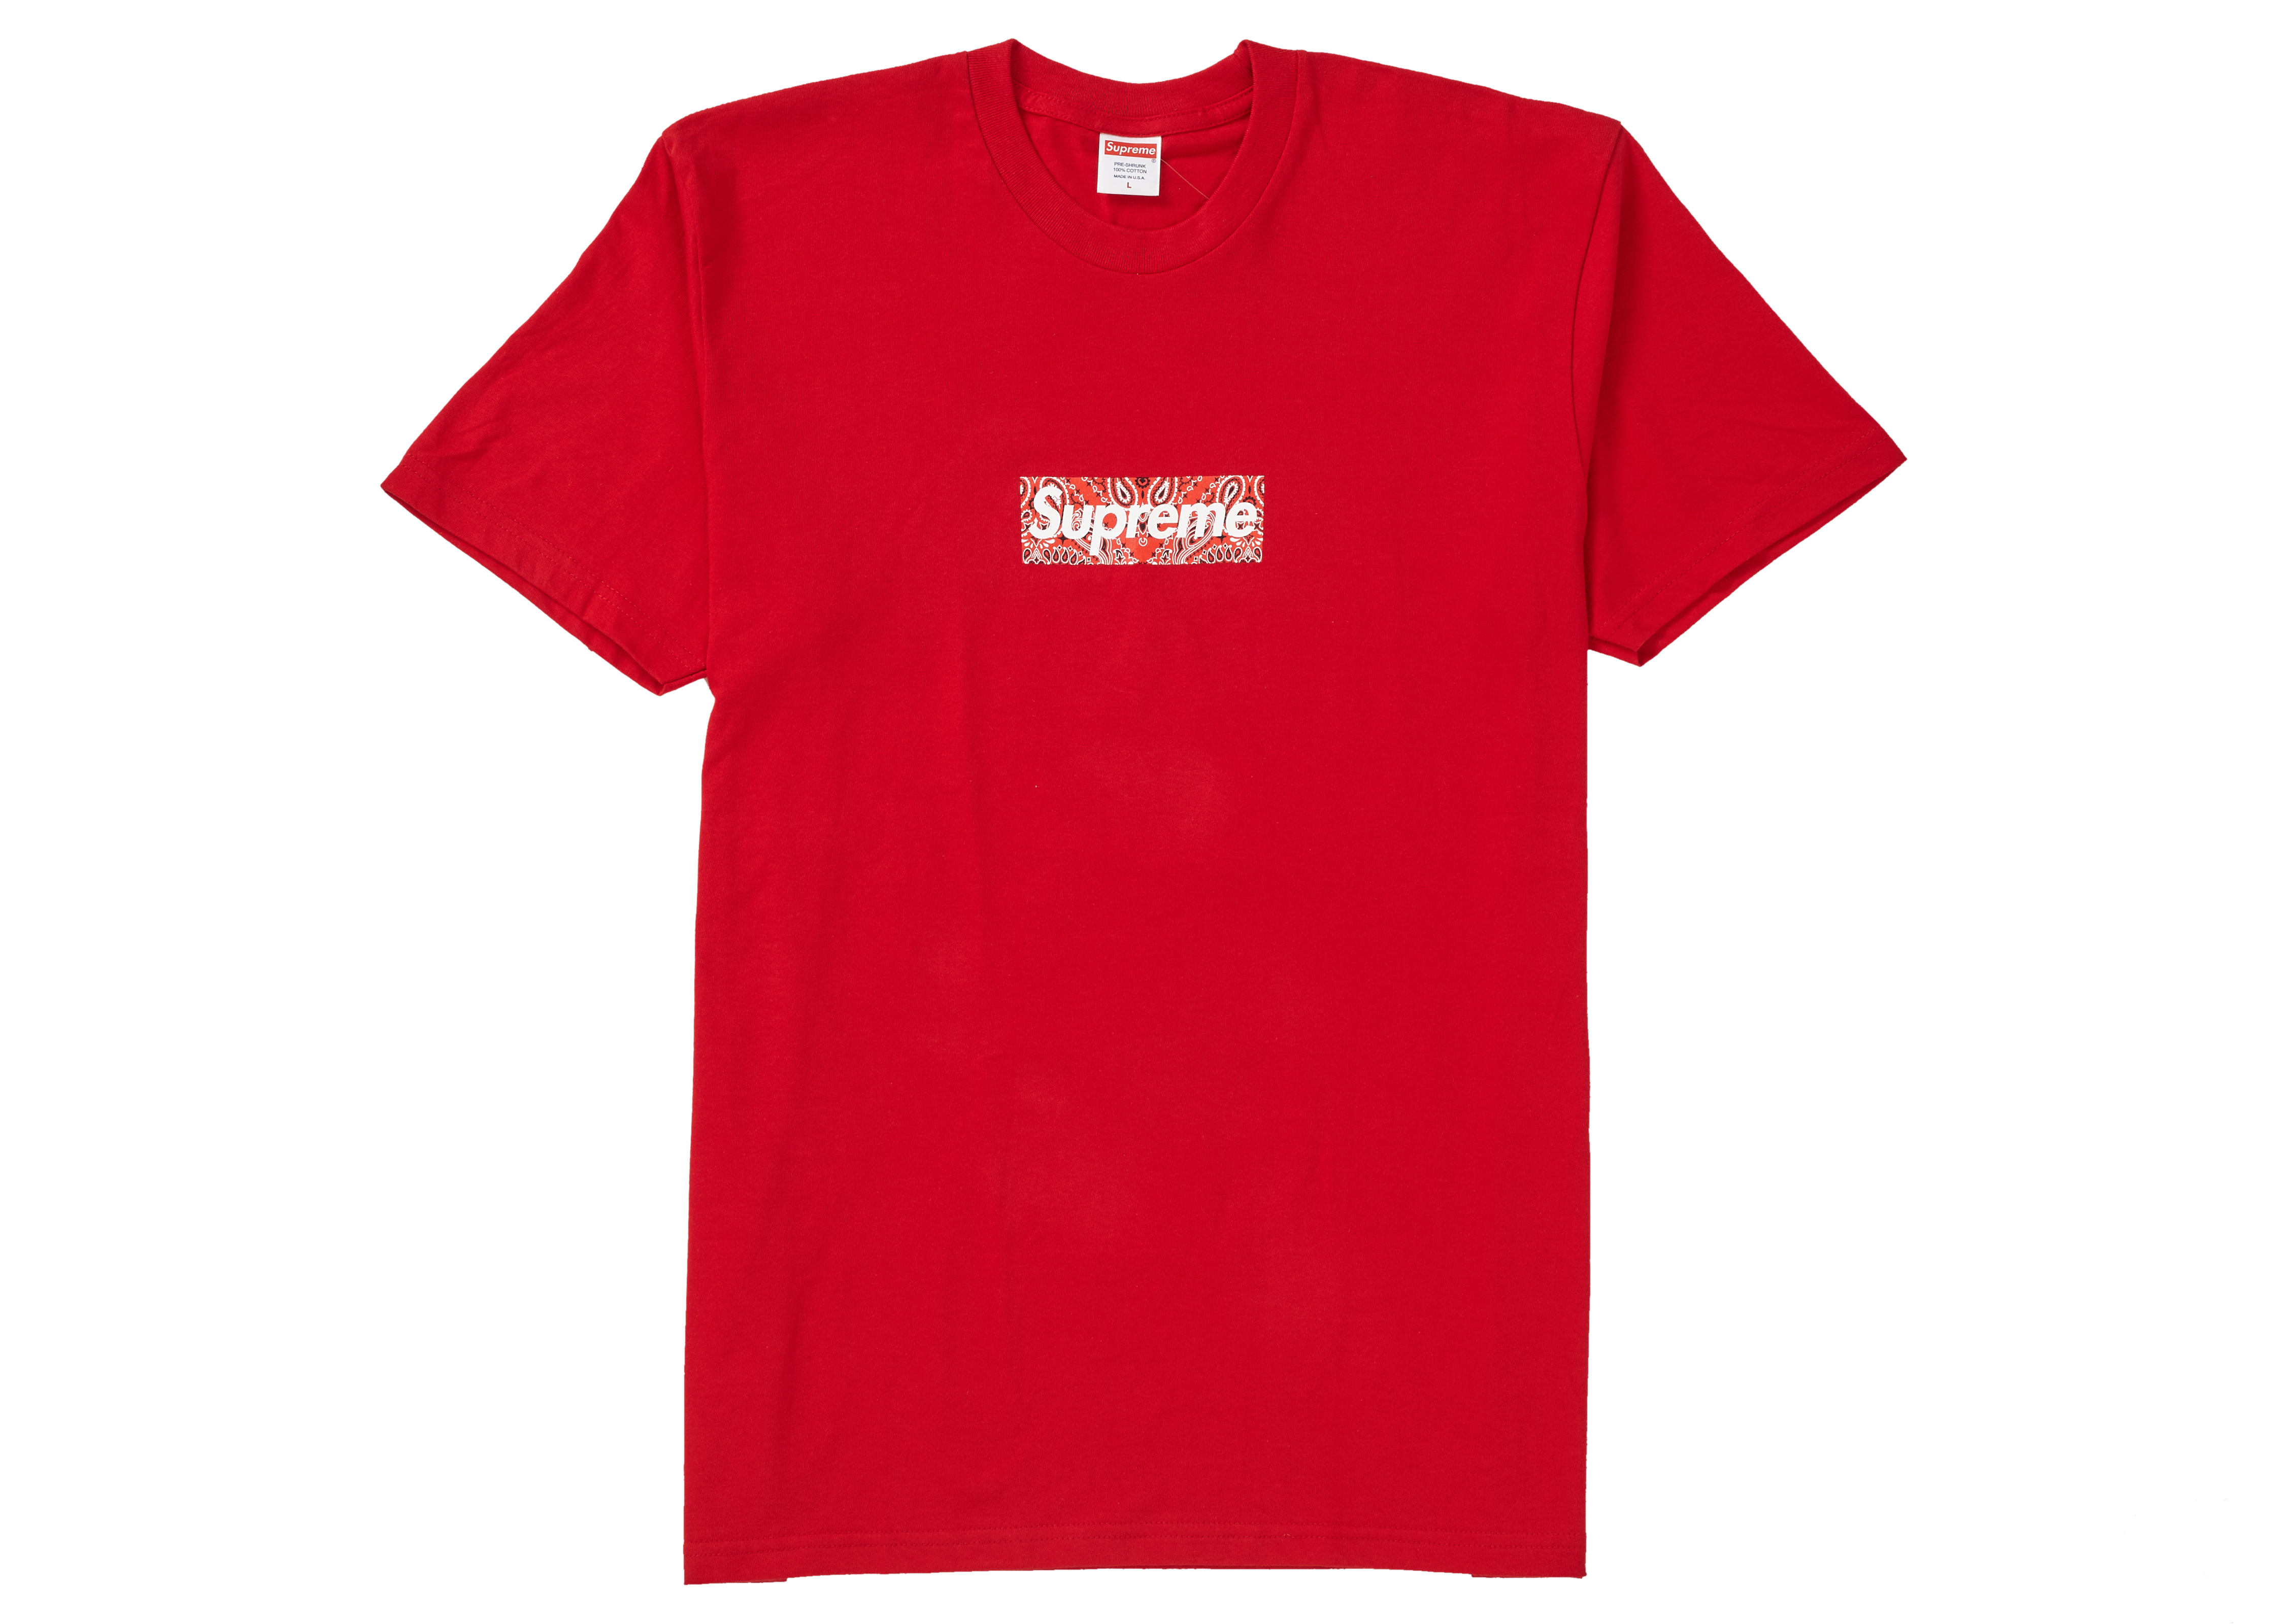 red supreme tshirt